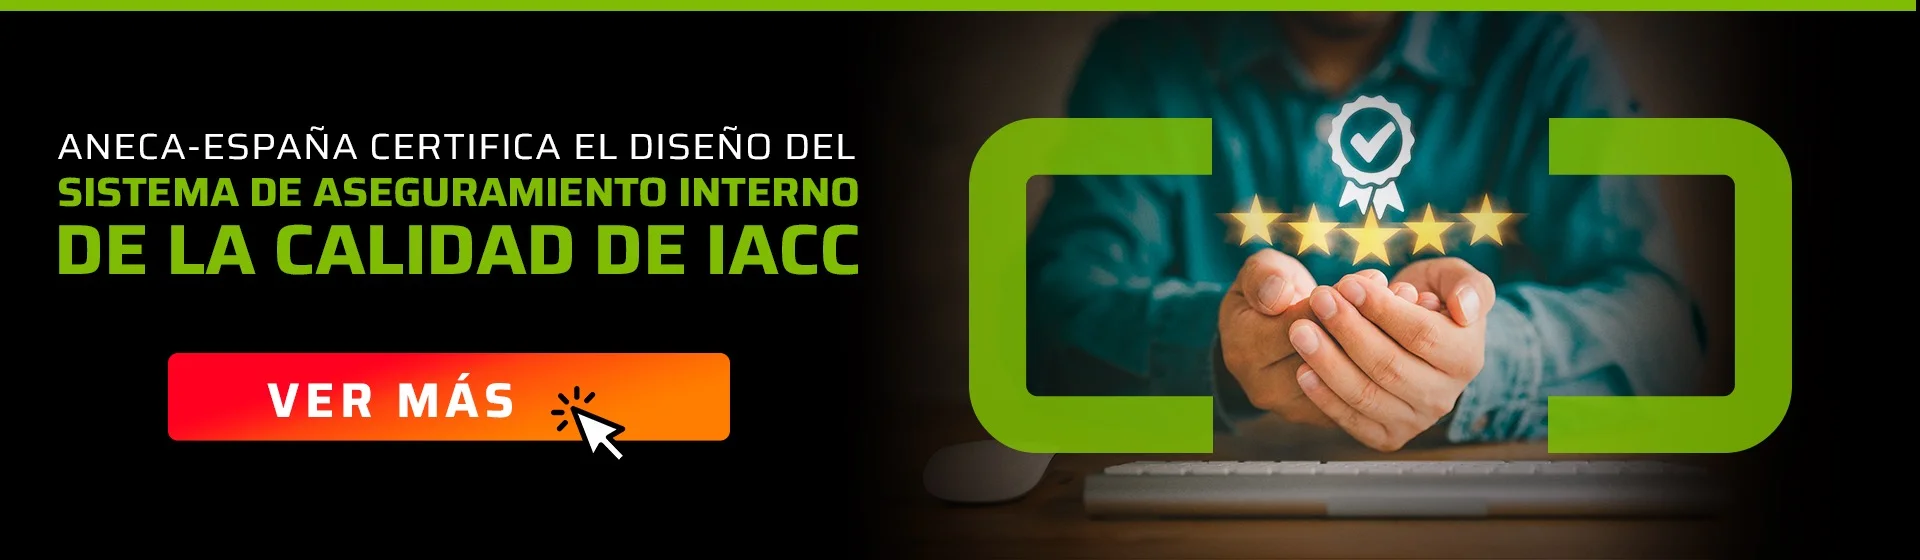 certificación ANECA IACC